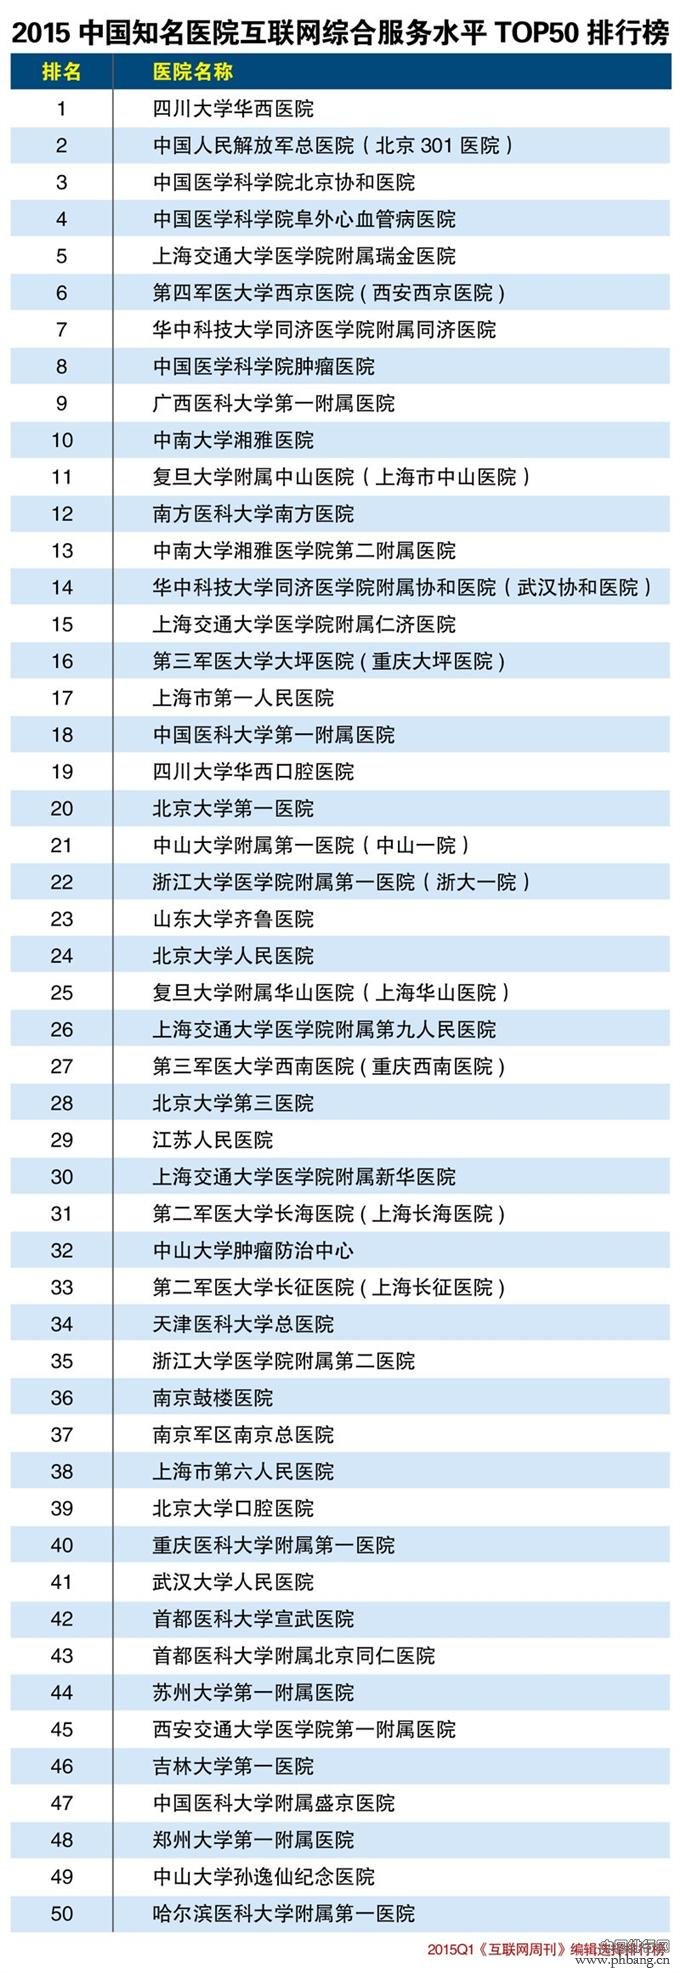 2015年中国知名医院互联网综合服务水平排行榜TOP50